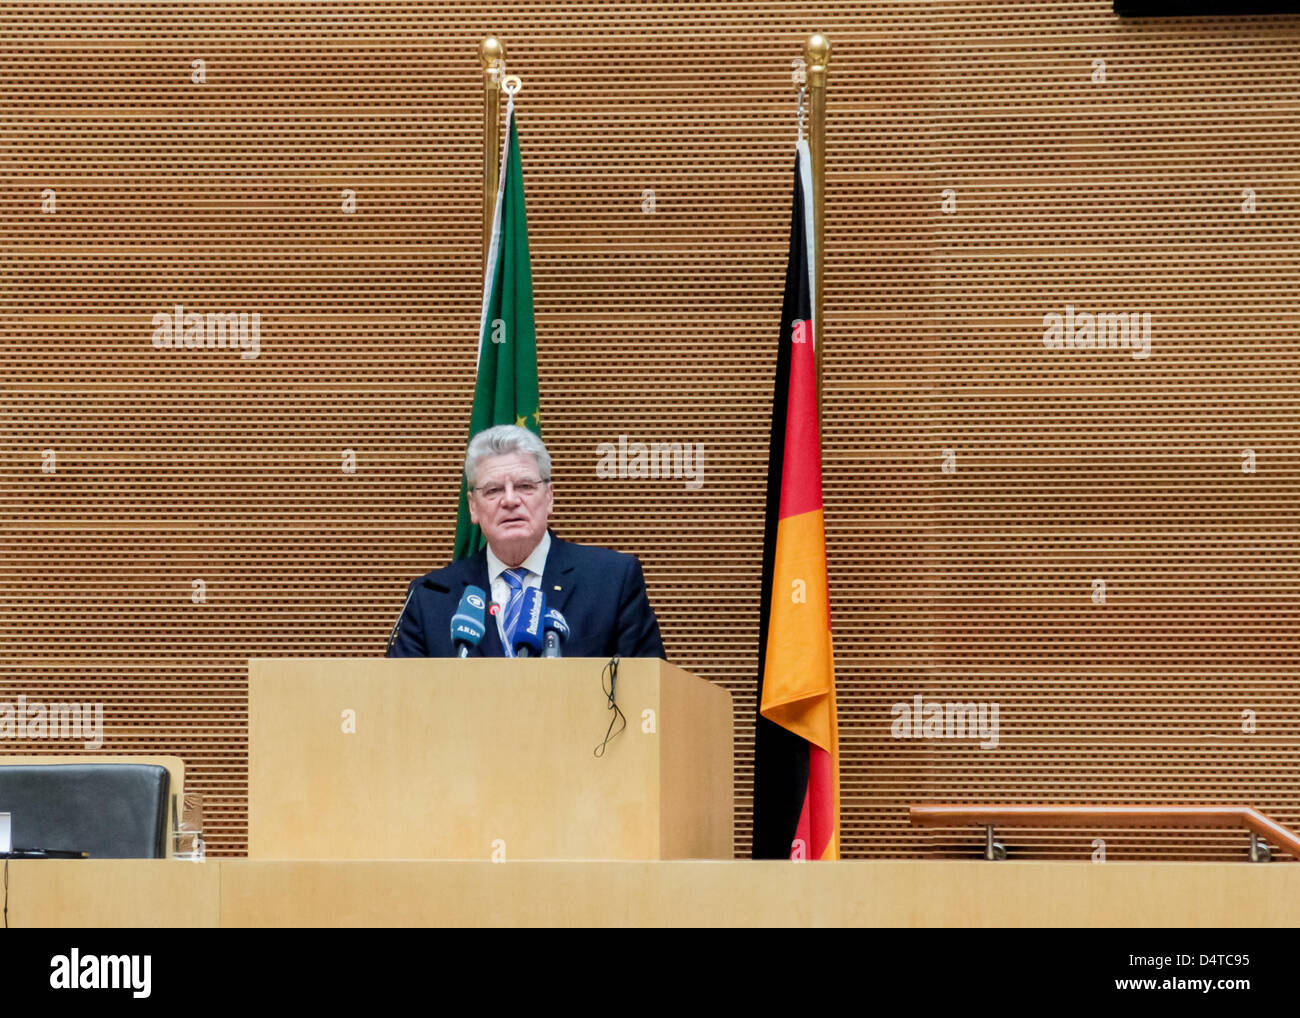 Addis Abeba, Ethiopie - 18 Mars : Le Président allemand Joachim Gauck livre son discours prononcé devant le Conseil des Représentants permanents de l'UA à la Commission de l'Union africaine à Addis-Abeba, Ethiopie, le 18 mars 2013 Banque D'Images